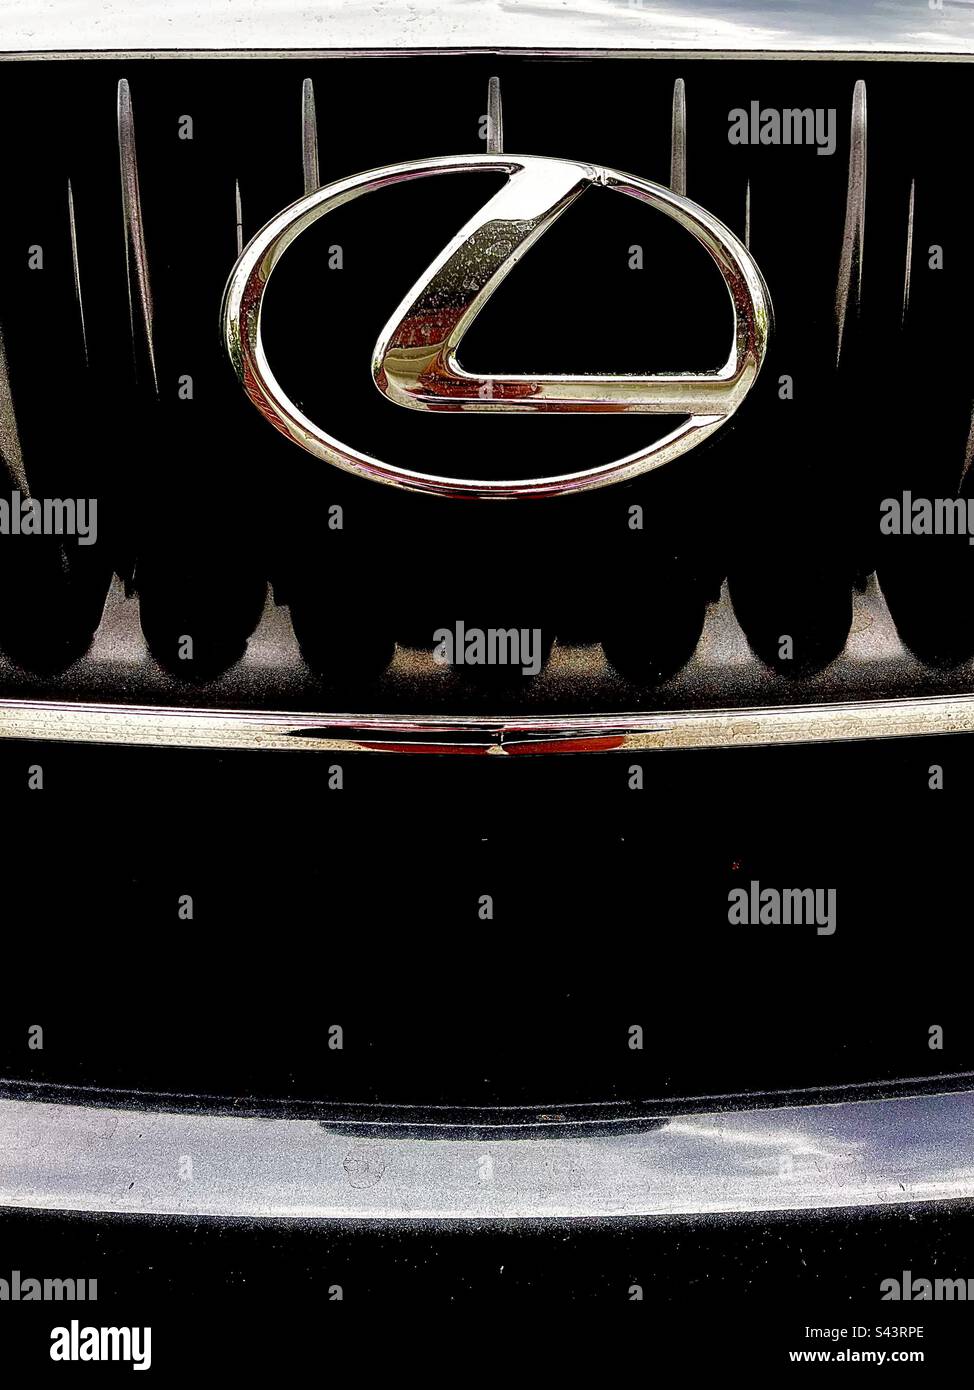 Gros plan sur l'avant de Lexus noir, affiche le grill et le logo. Inclut l'espace d'impression. Banque D'Images